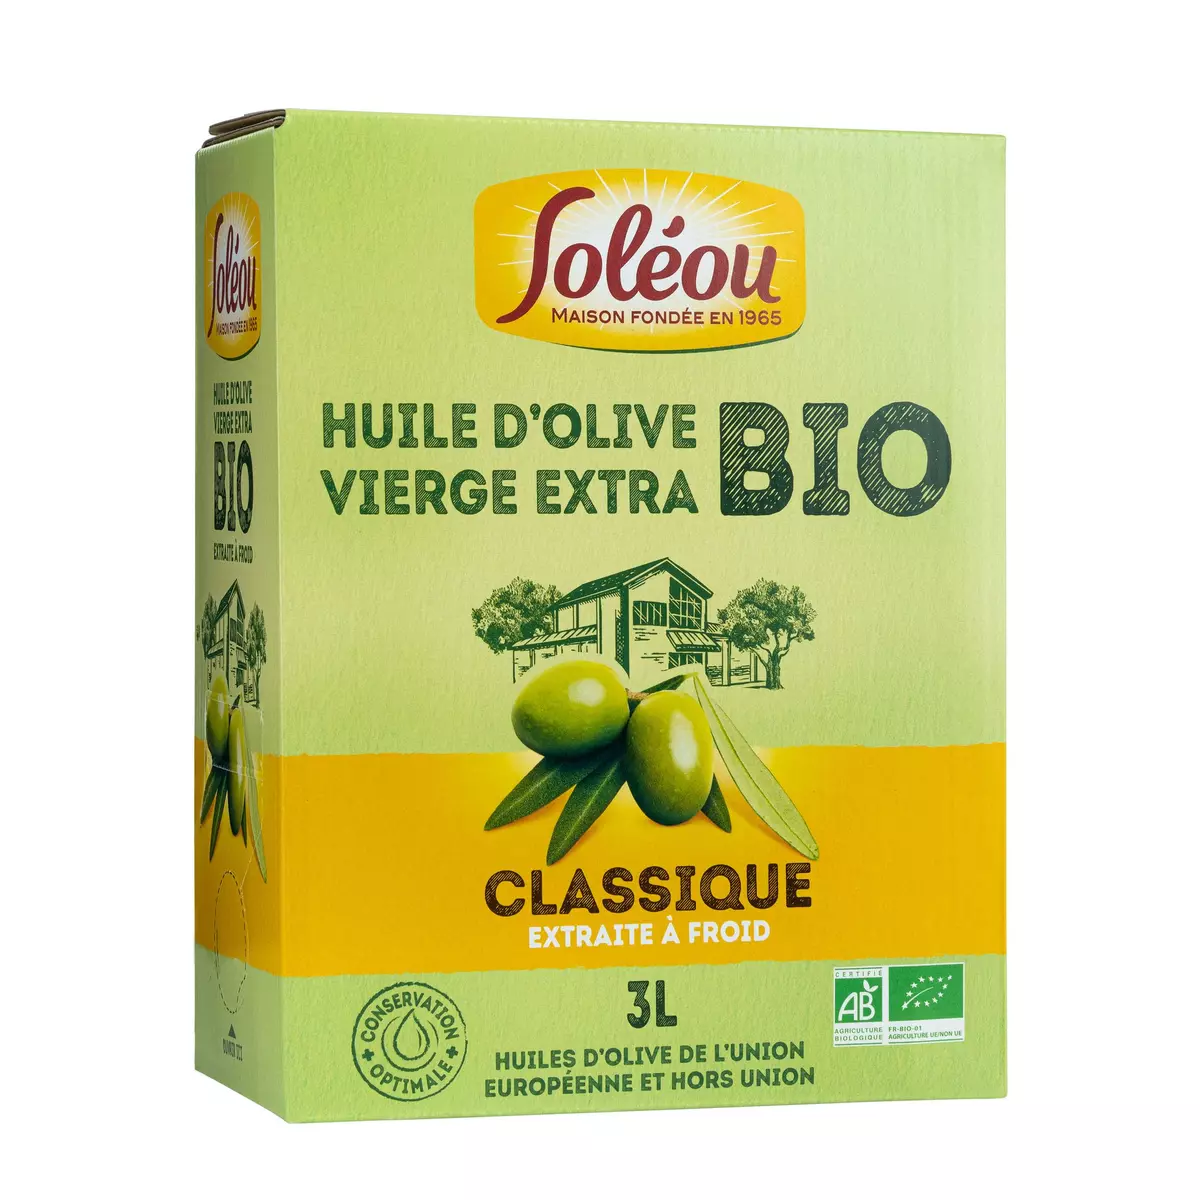 SOLEOU Huile d'olive vierge extra bio classique extraite à froid Bib 3l